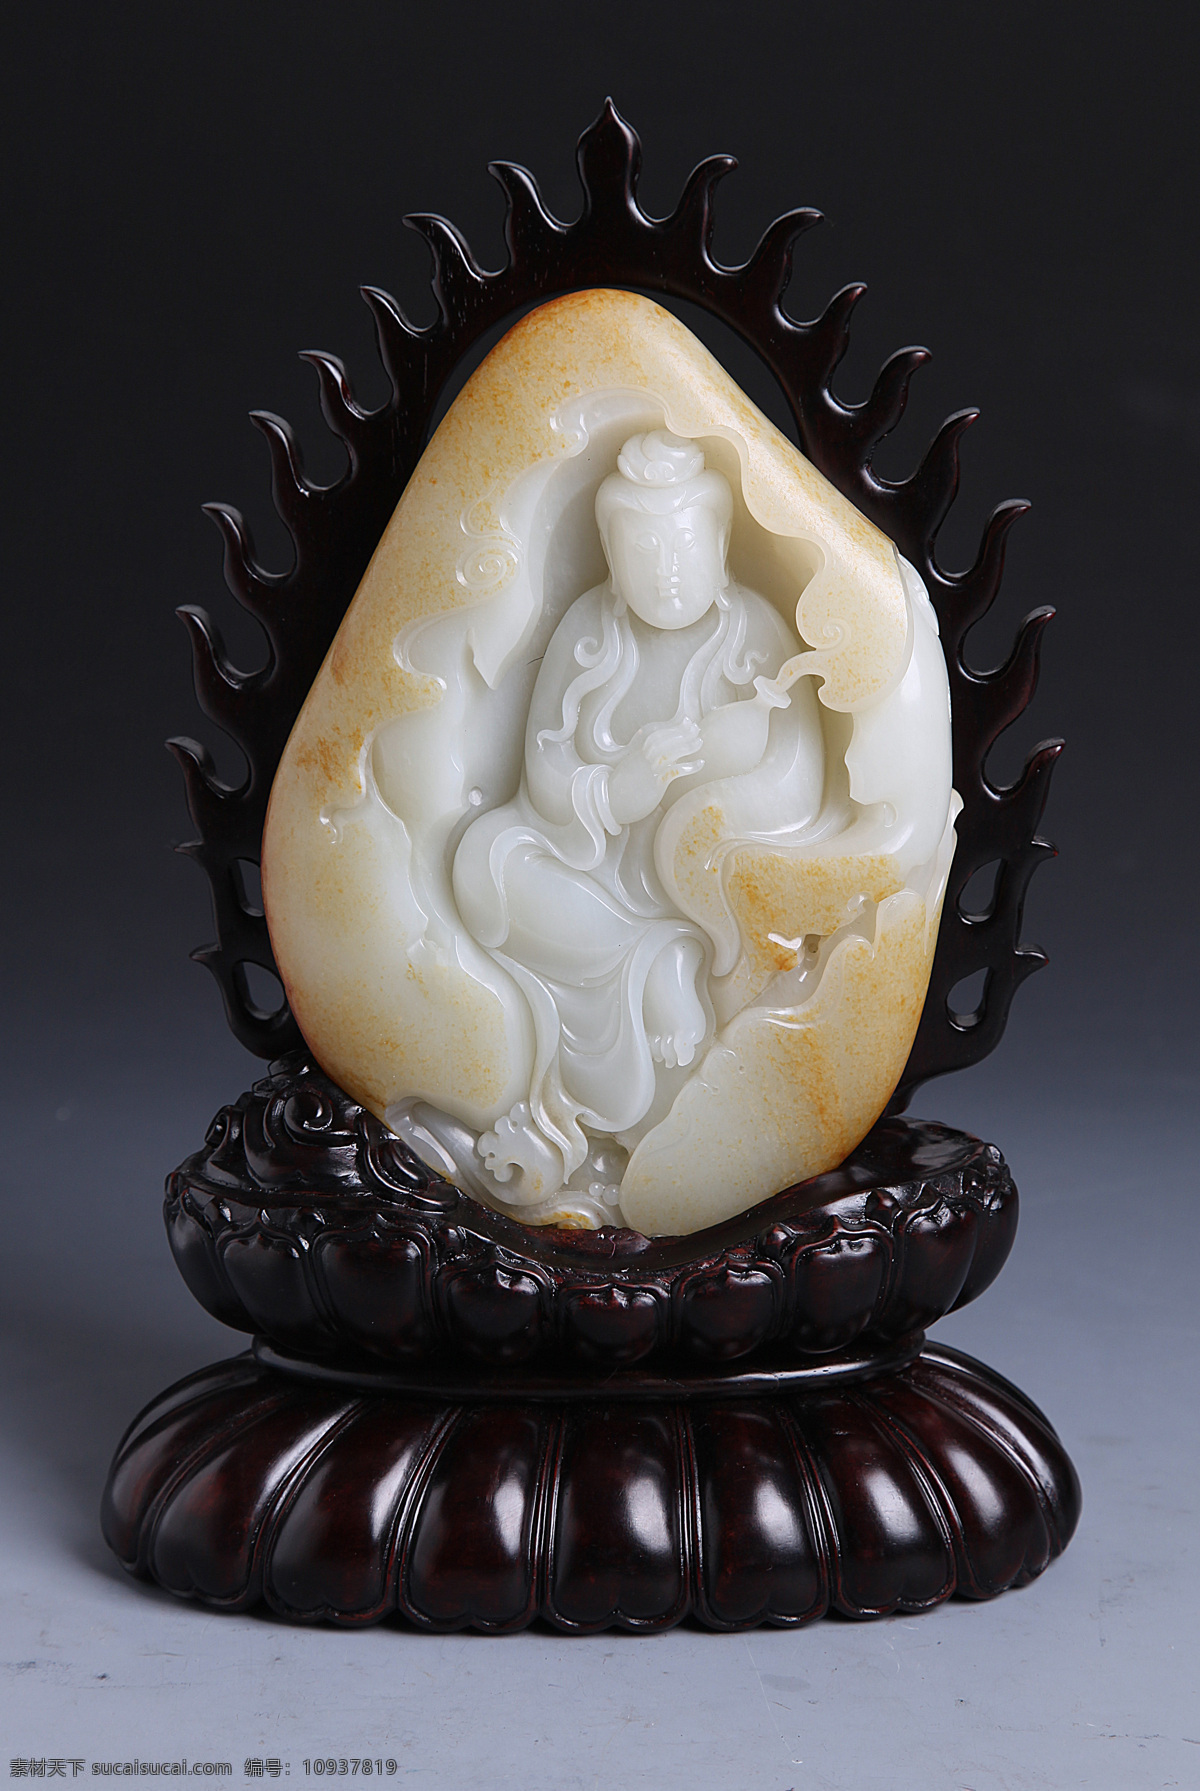 玉石 玉器 雕像 精雕细琢 工艺品 艺术品 收藏品 古玩玉器 财运 传统文化 文化艺术